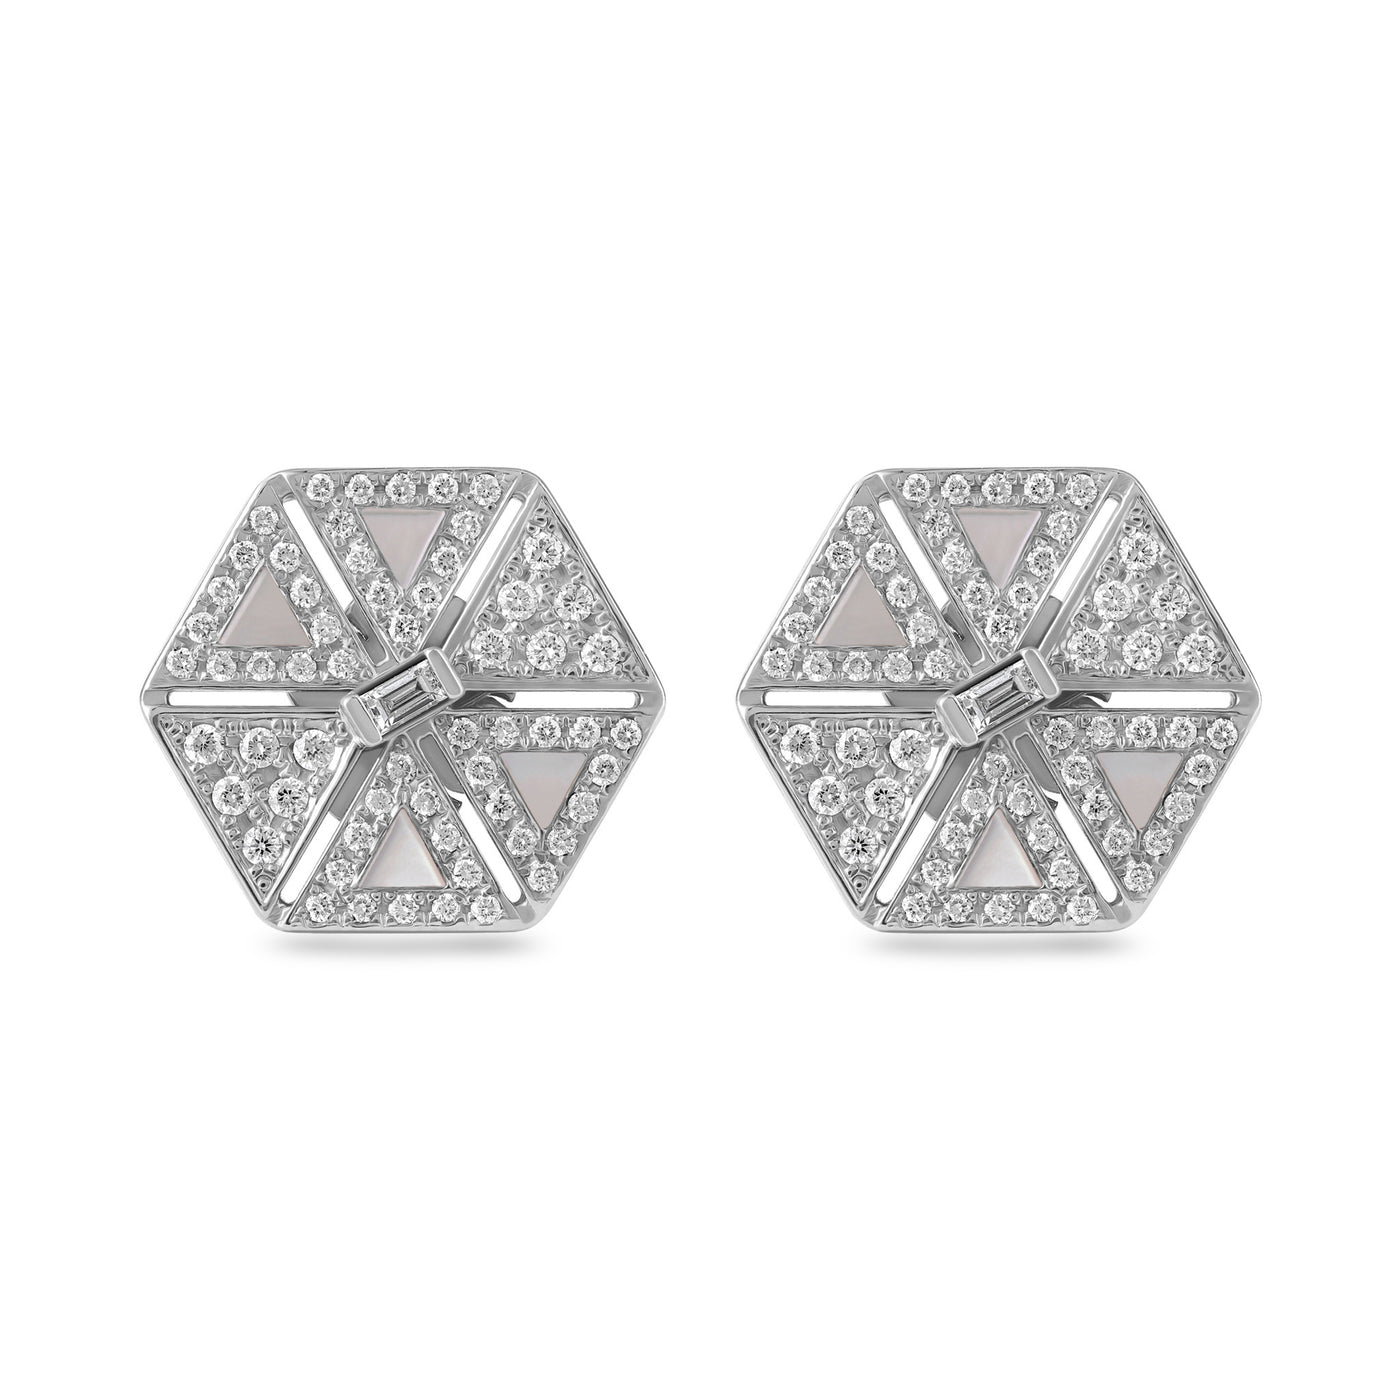 White Gold Cluster Diamond Earring